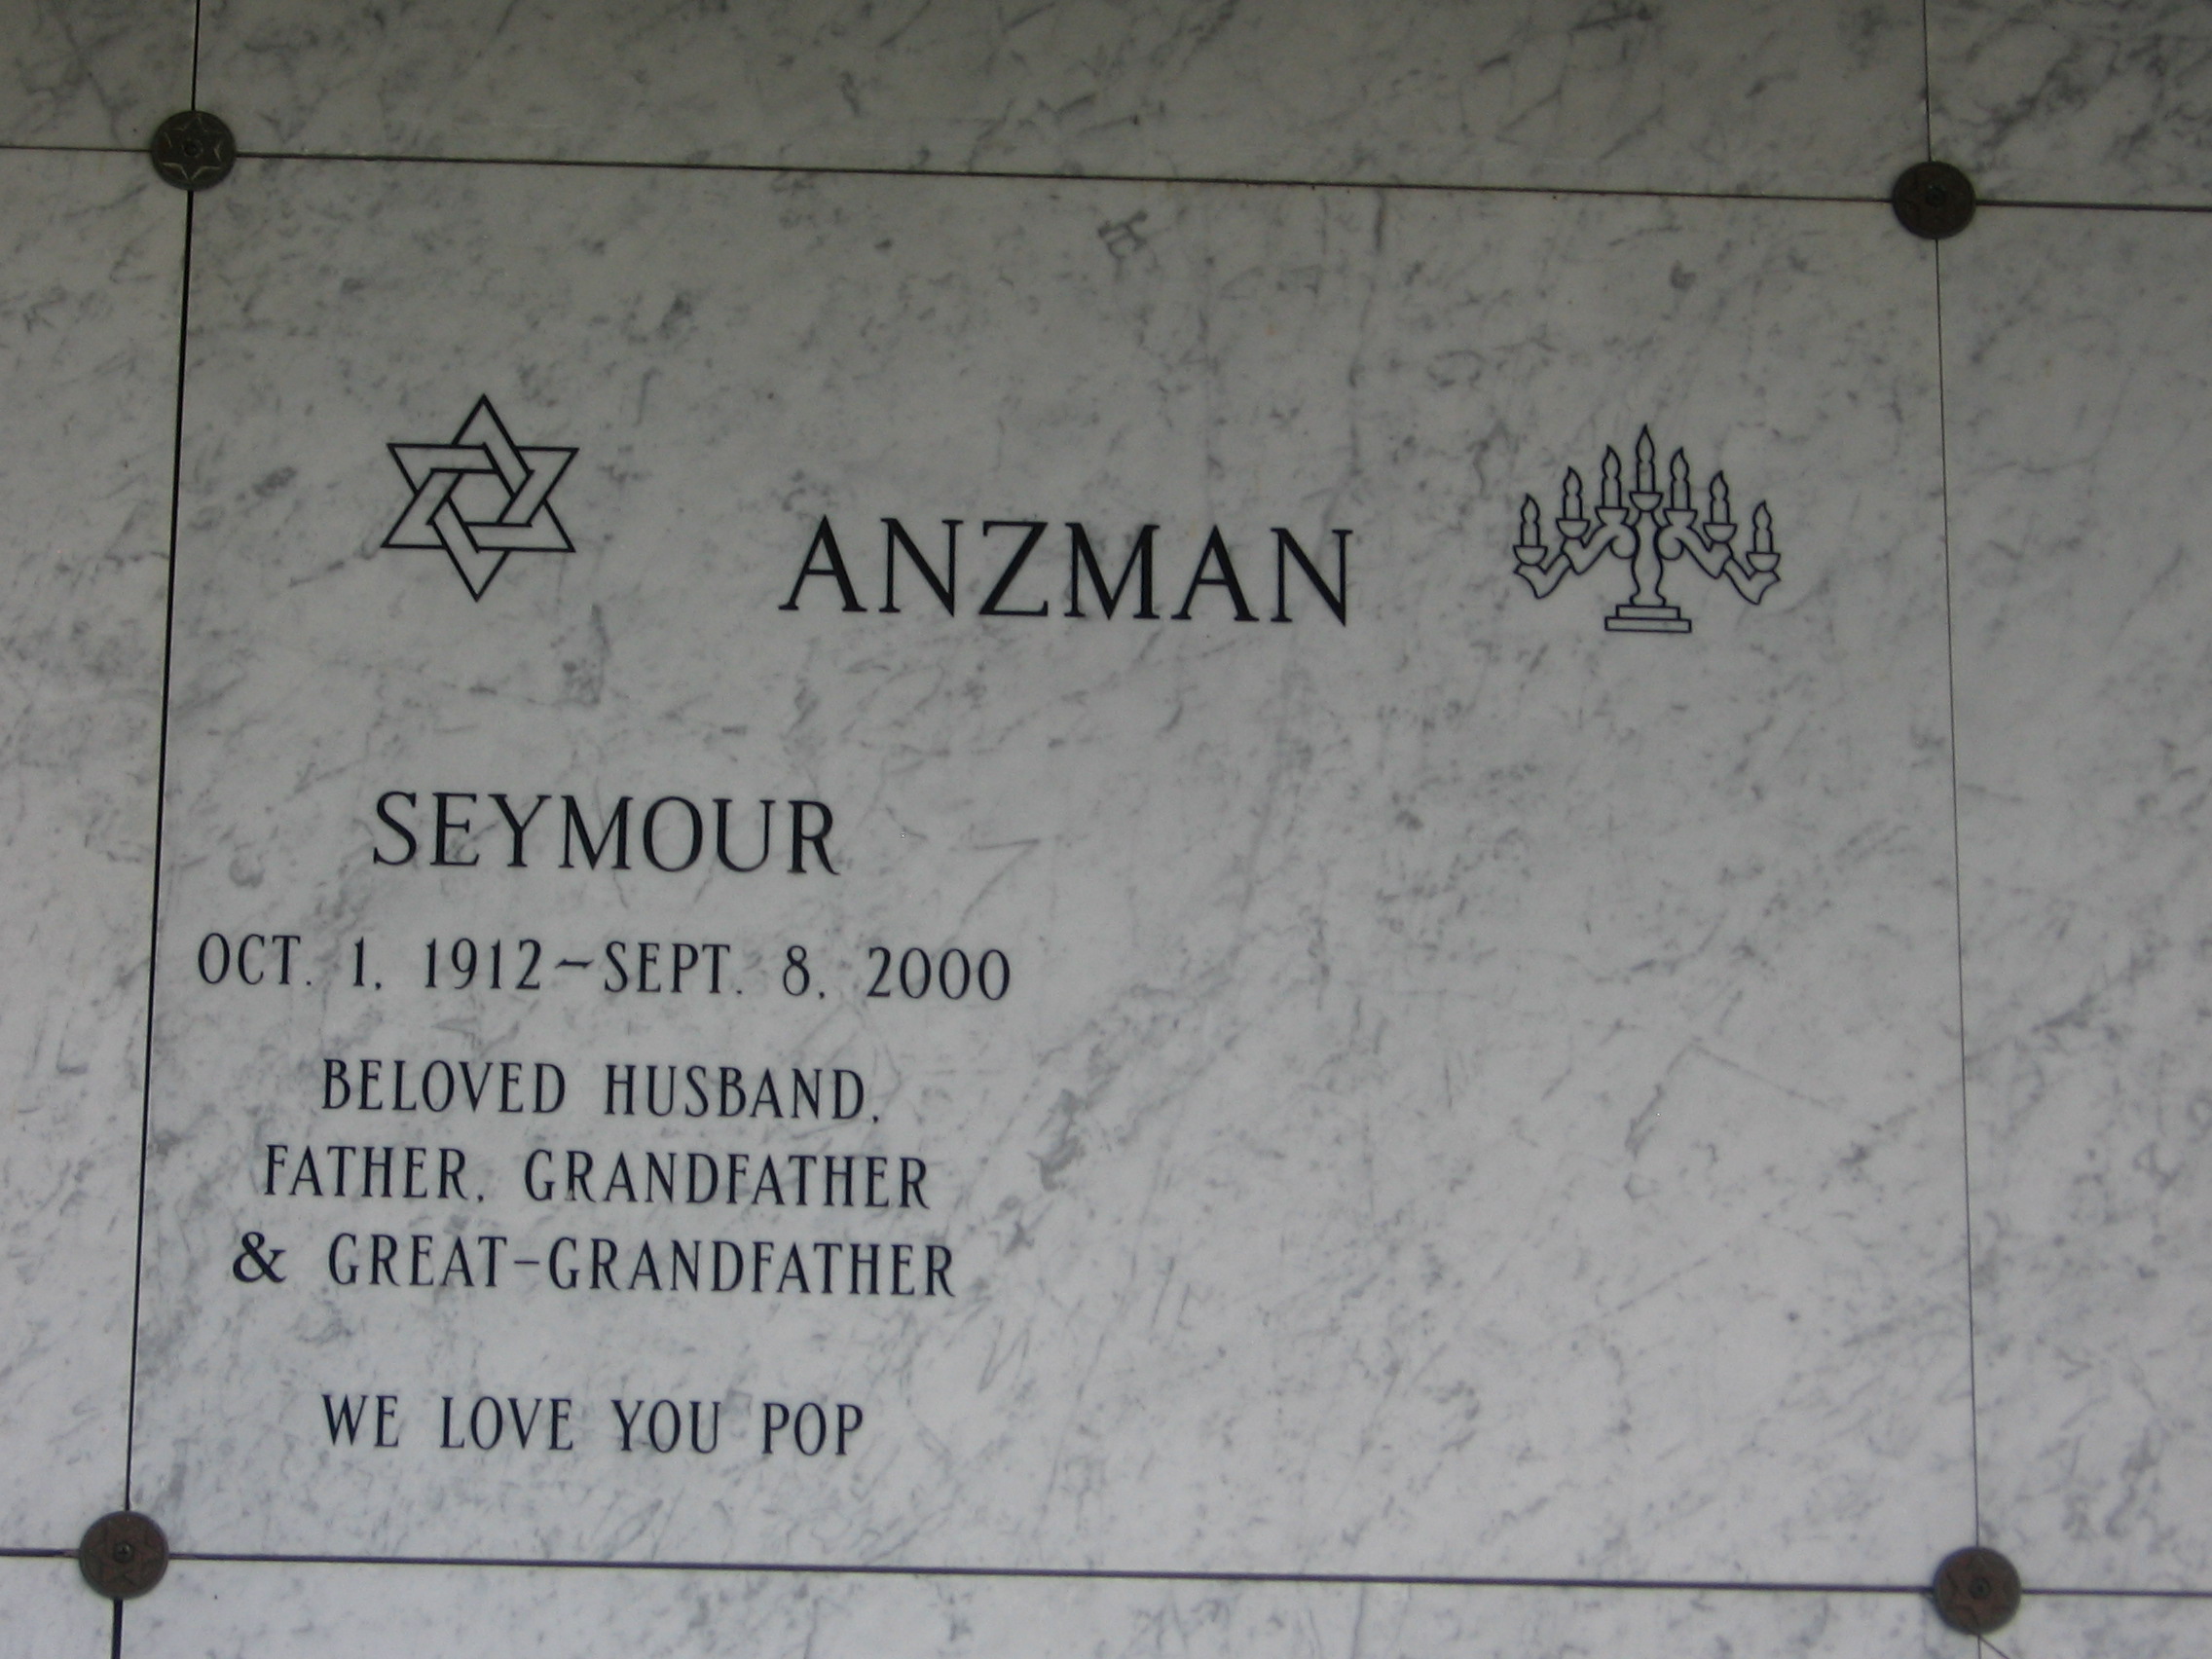 Seymour Anzman